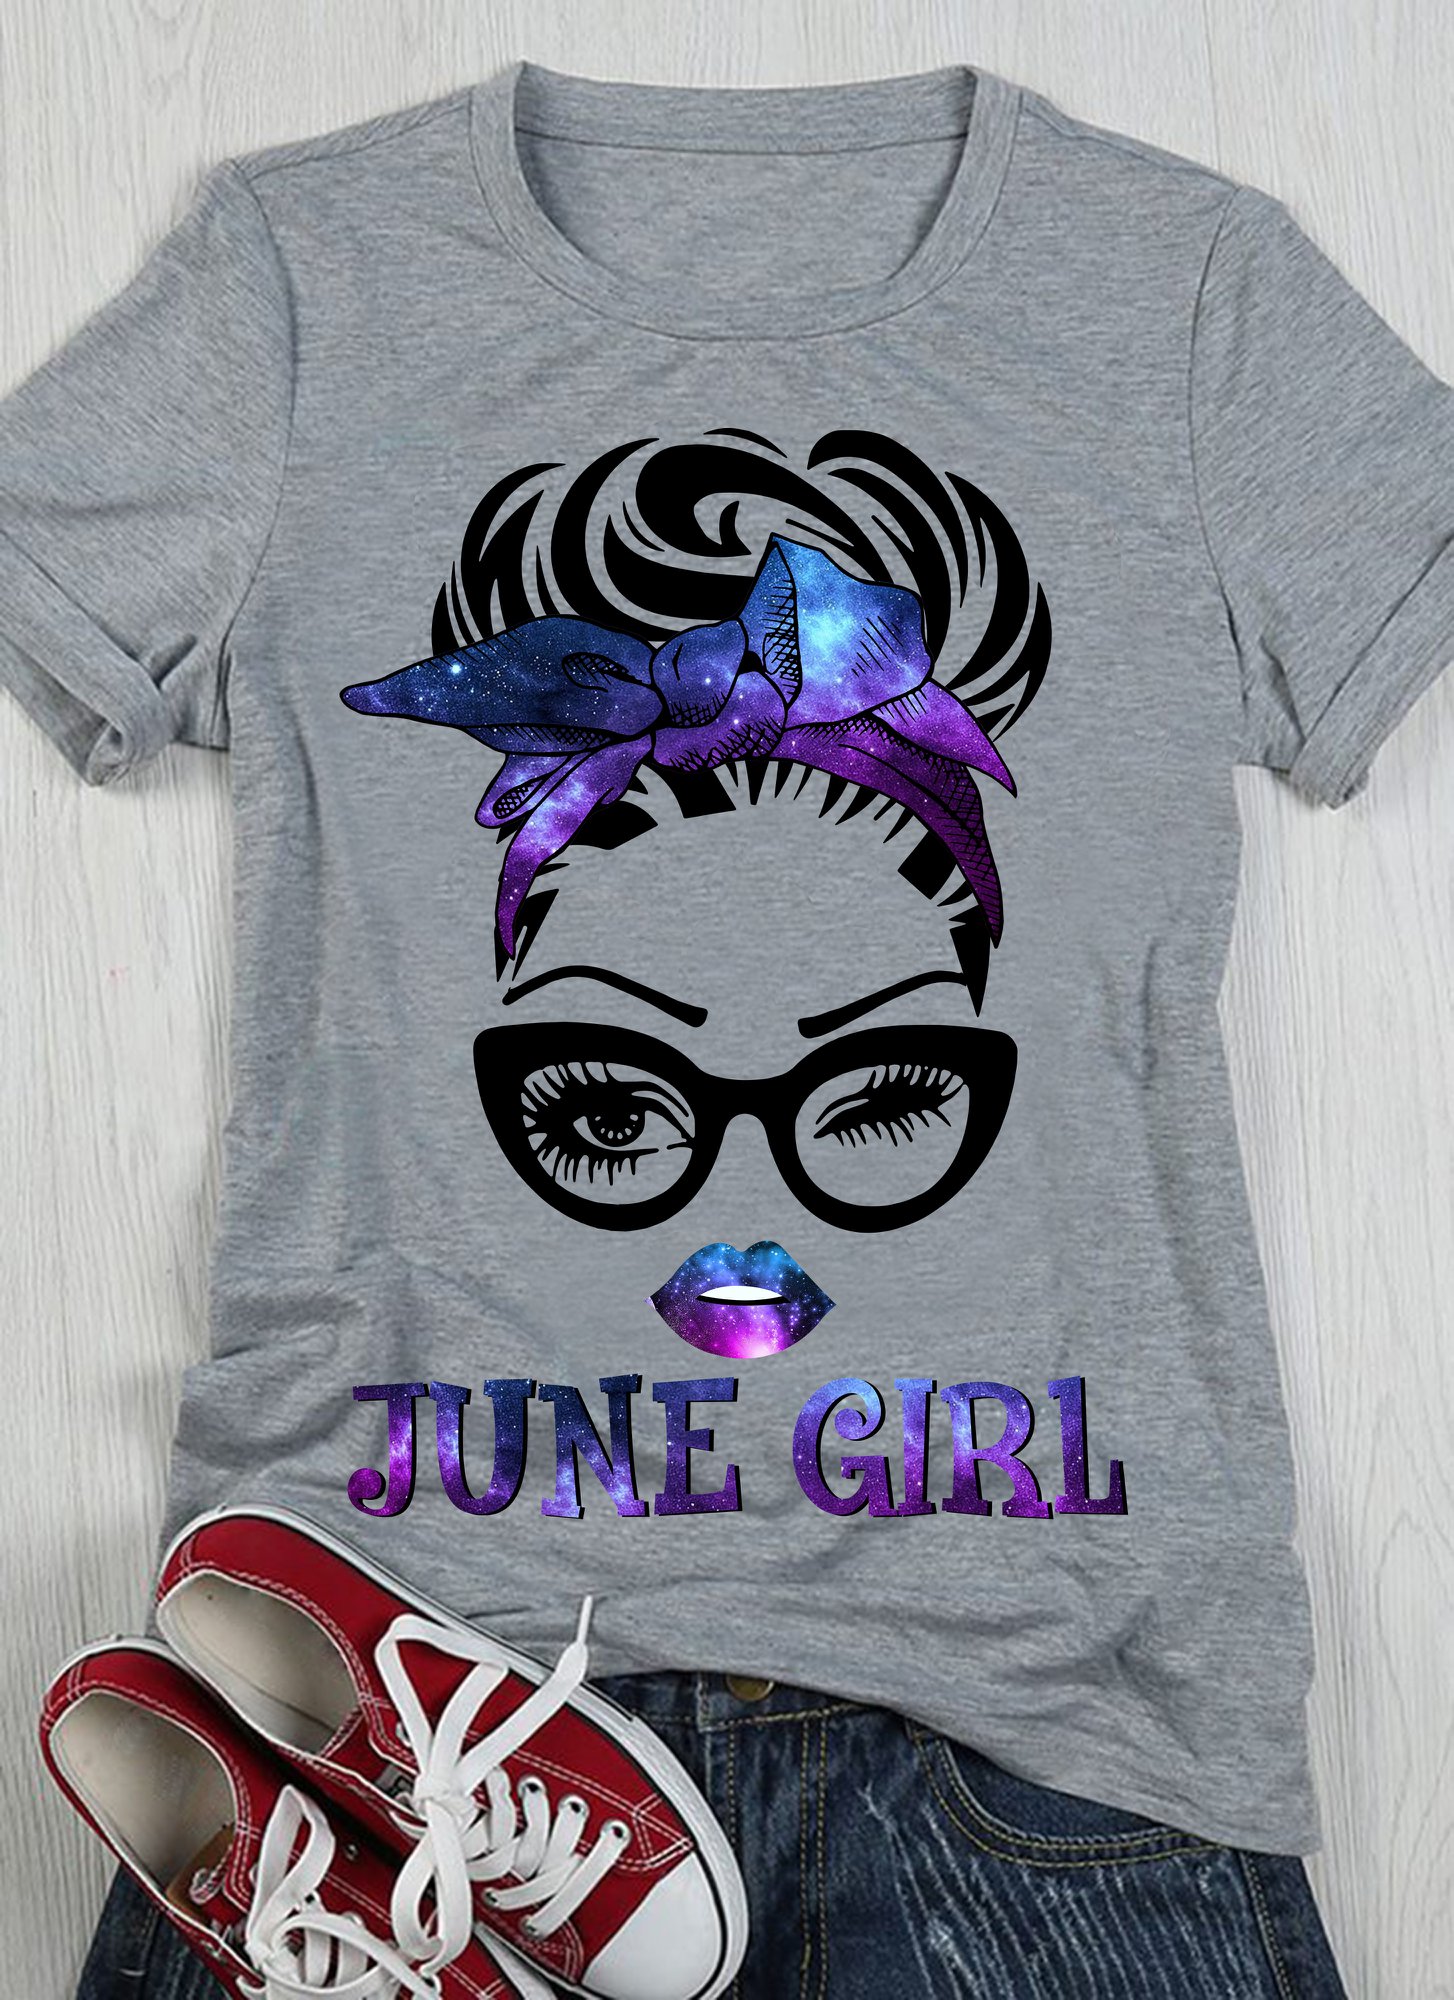 June girl